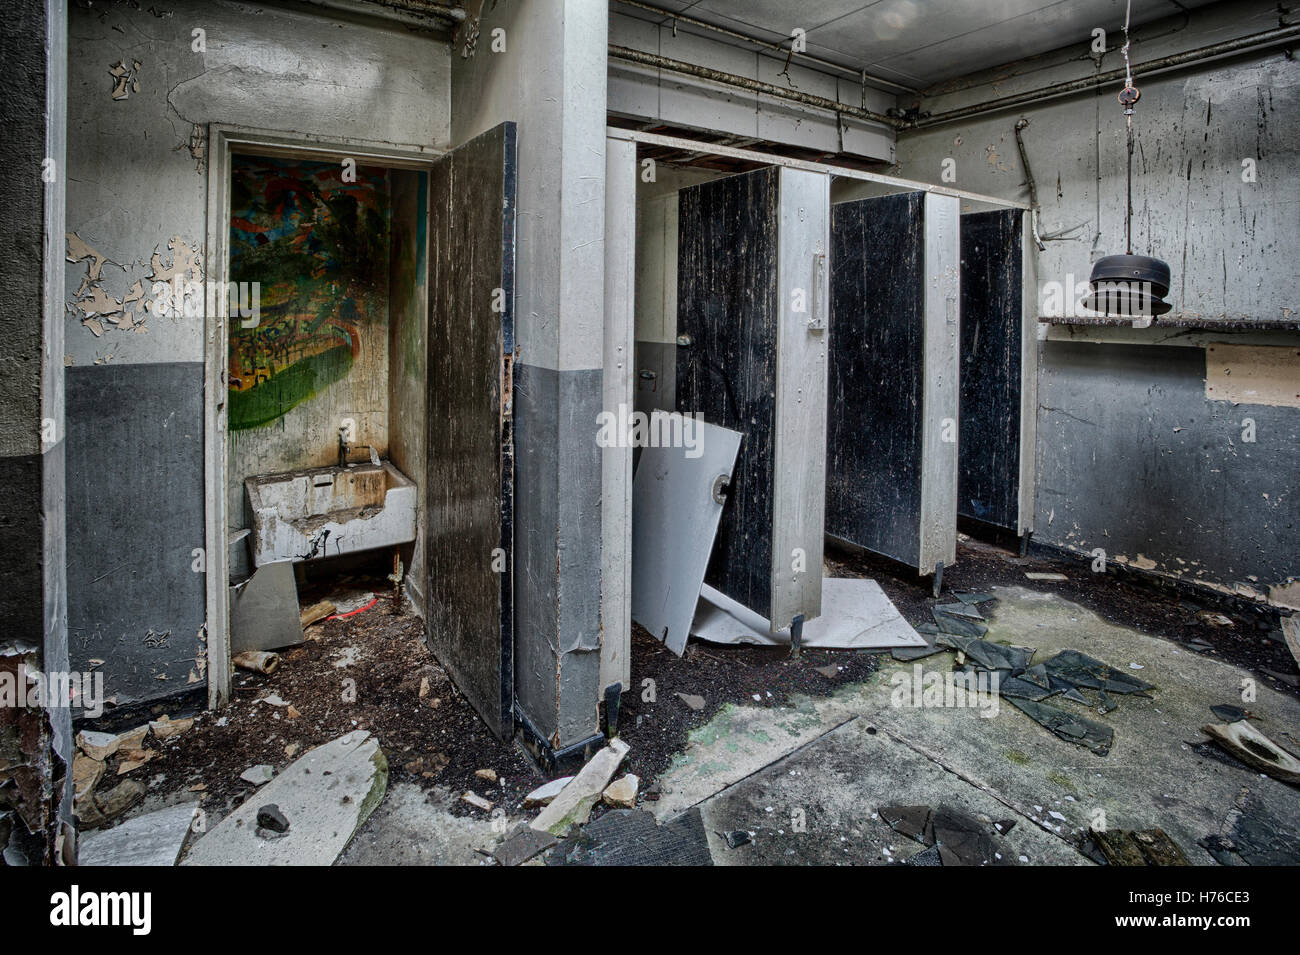 Atelier abandonné des toilettes, l'exploration urbaine, hdr Banque D'Images